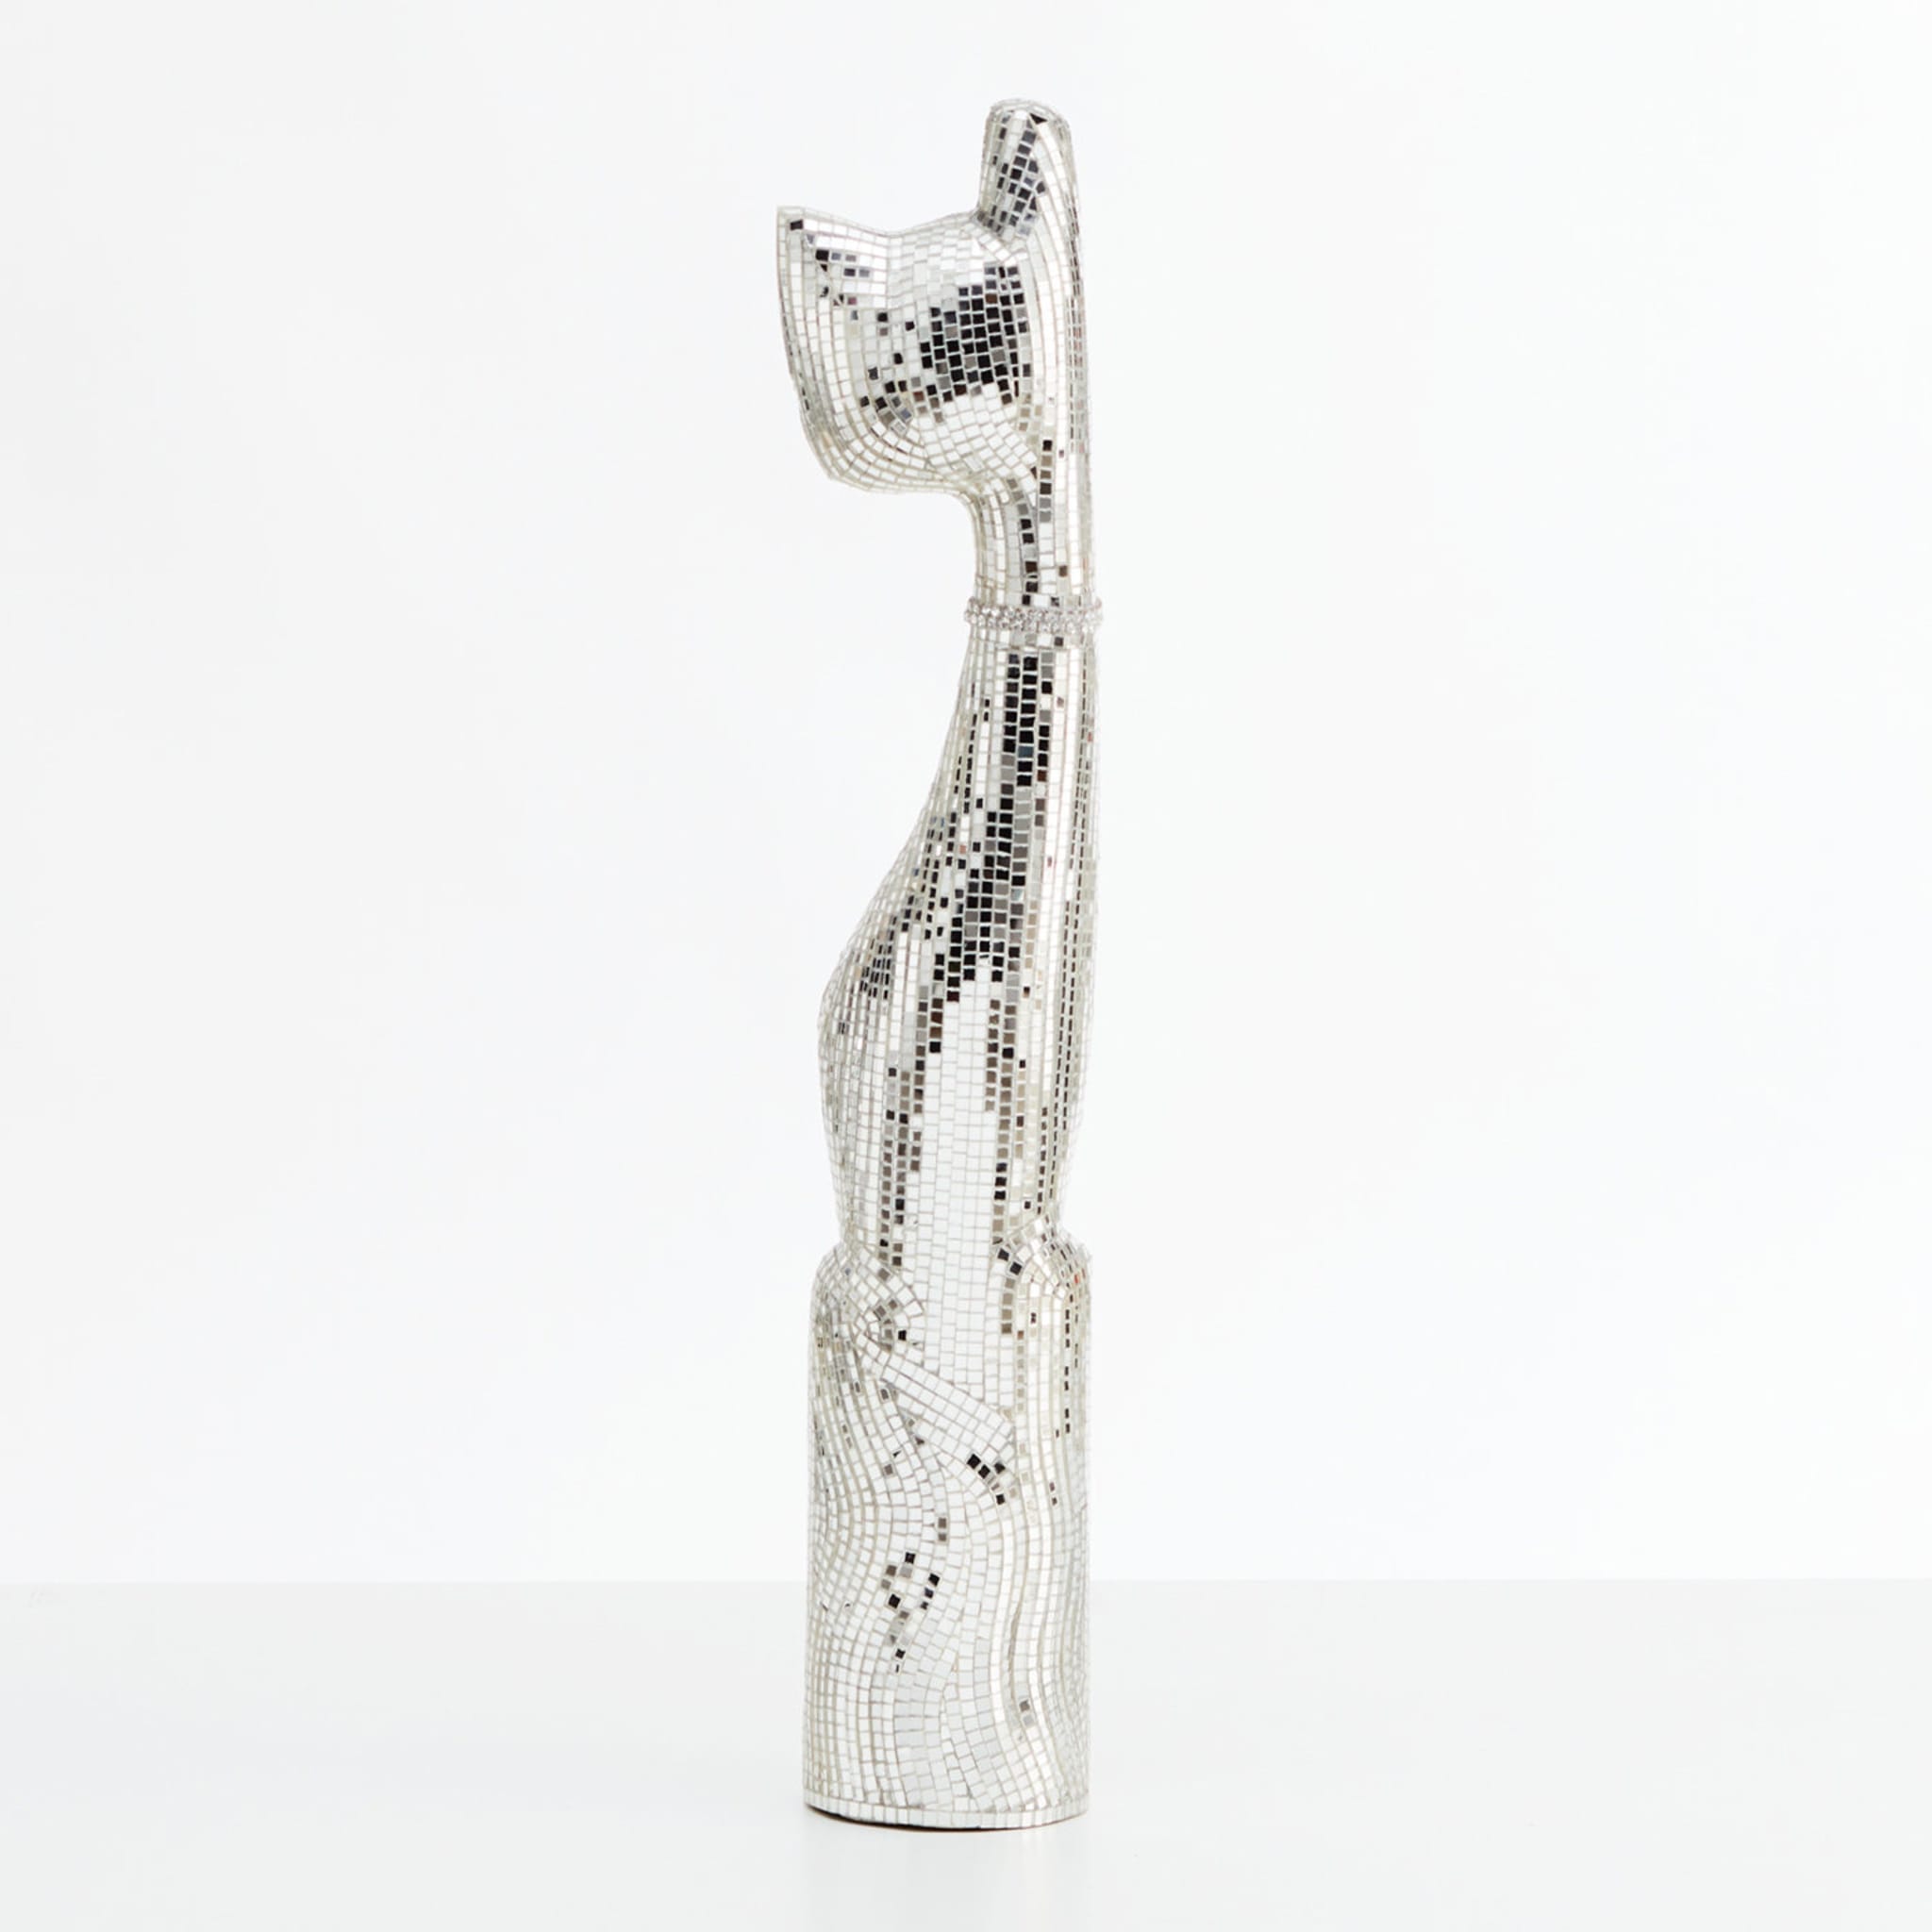 Gatto Silver Small Sculpture - Alternative view 2